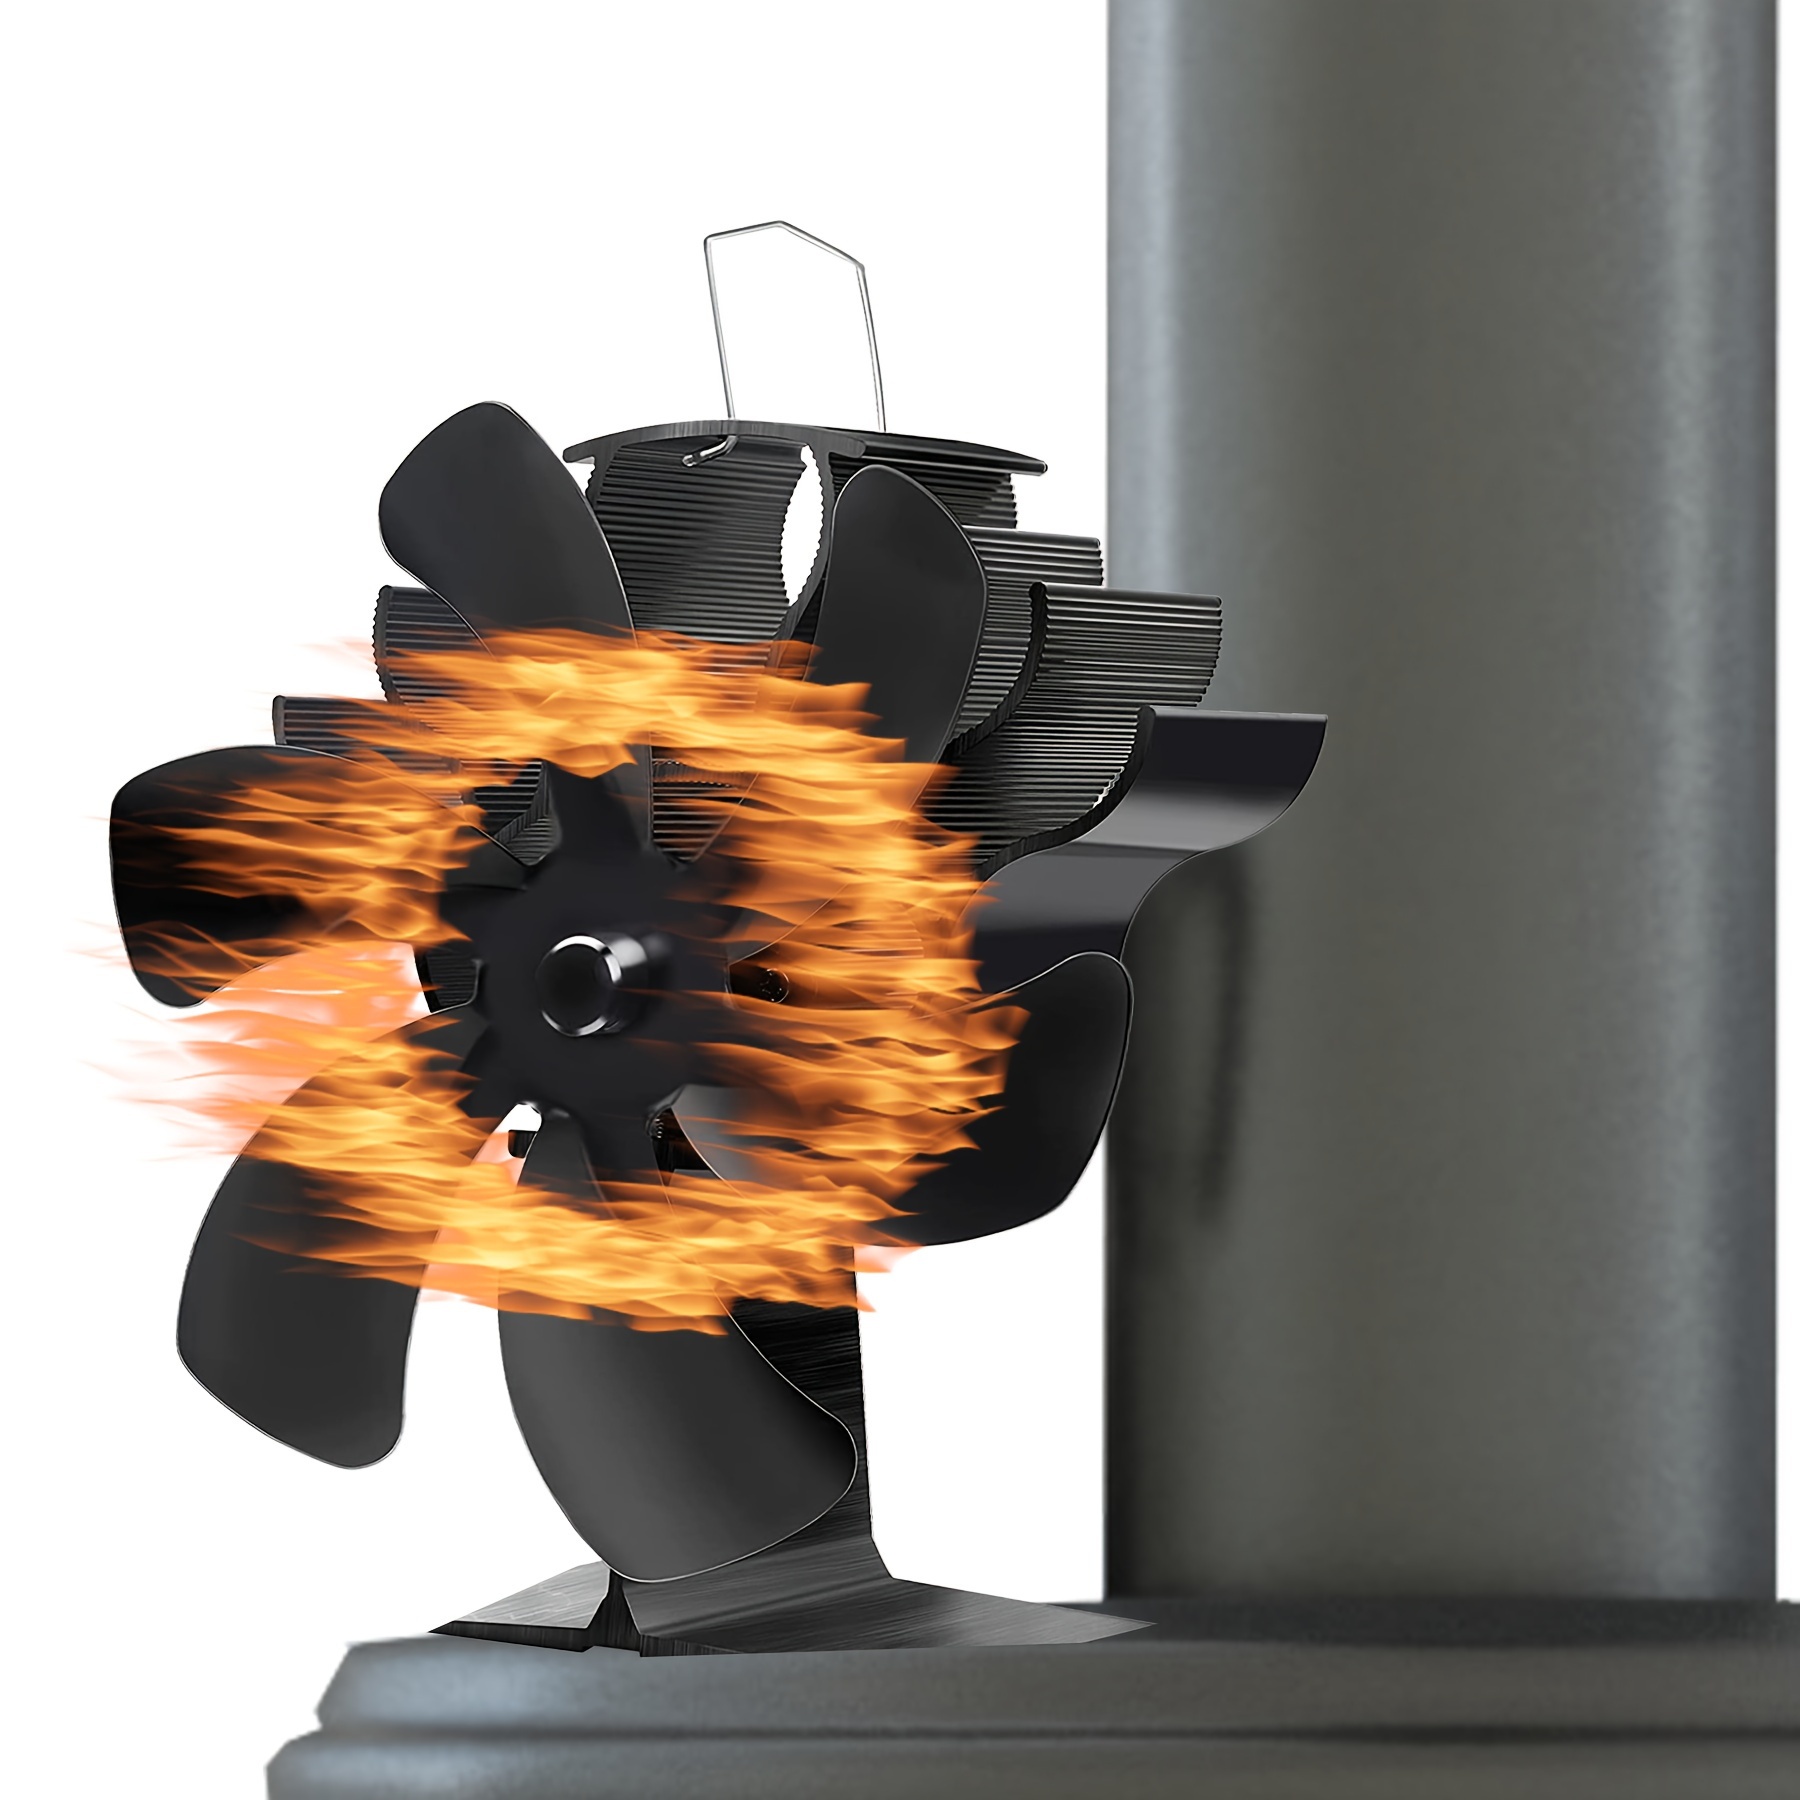  CXhome Ventilador de estufa de calor para madera, arranque  rápido, ventiladores de chimenea de 4 cuchillas, ultra silencioso, aumenta  un 80% más de aire caliente, ahorro de energía, reducción de 